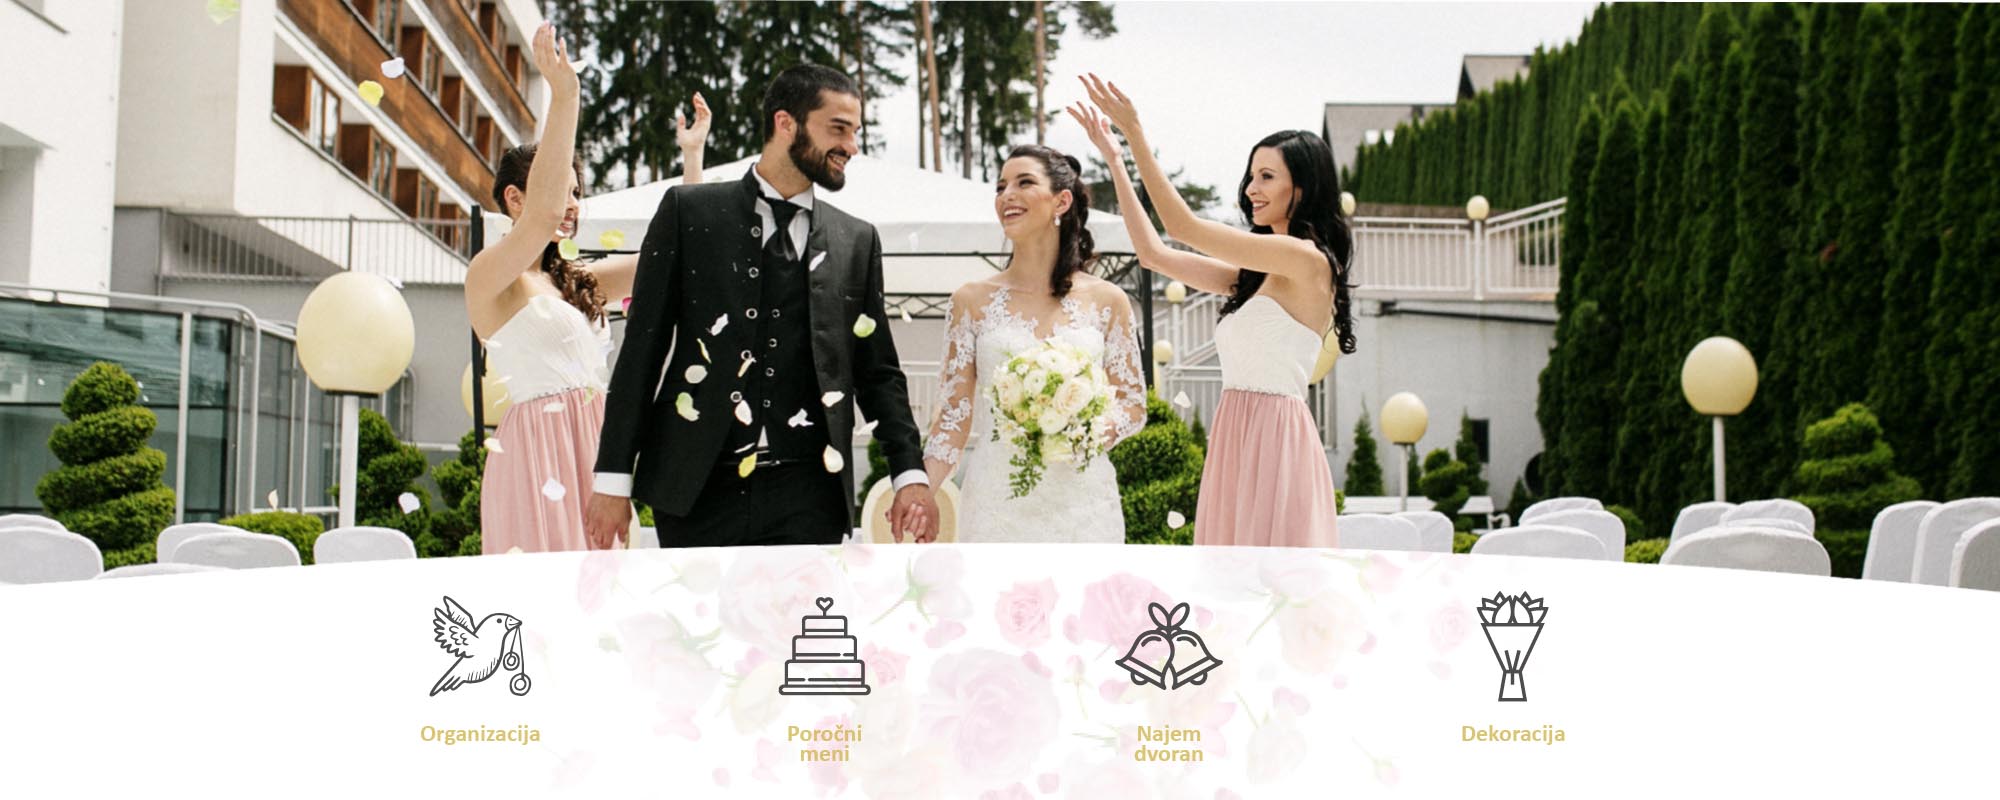 Na sliki so prikazane možnosti ponudbe poroke v hotelu Habakuk s prizorom s poroke v ozadju.